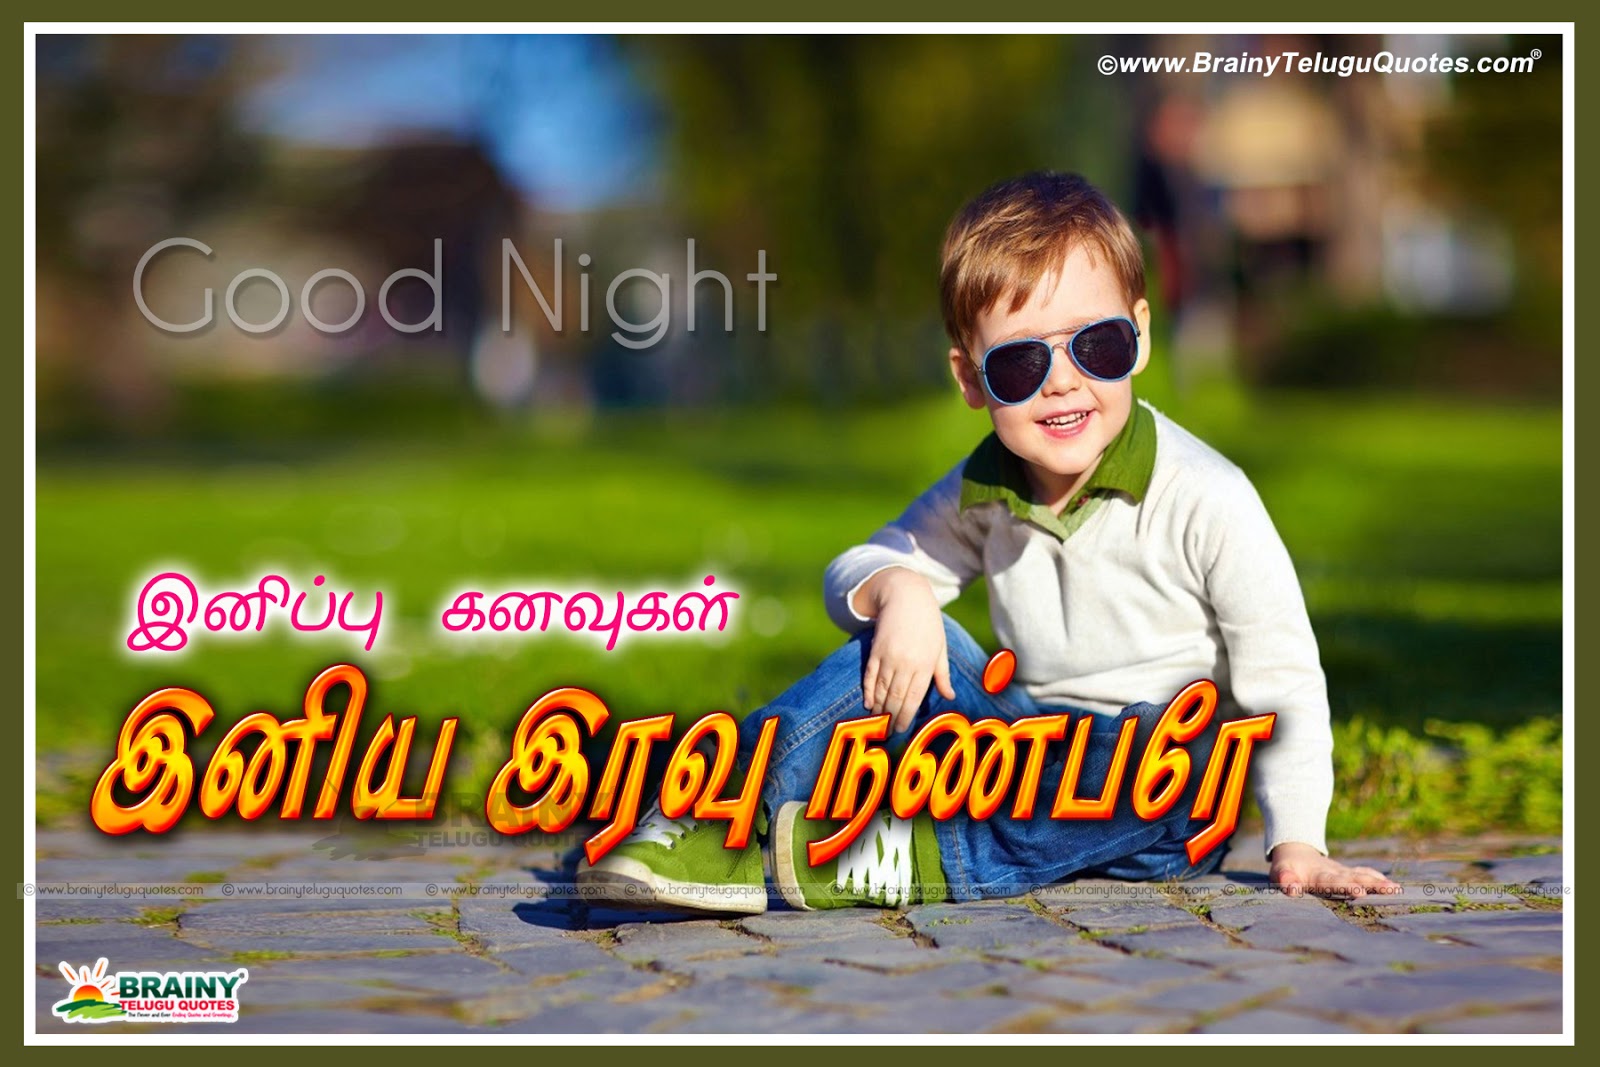 Tamil Good Night/Iravu Vanakkam Kavithai quotes wishes